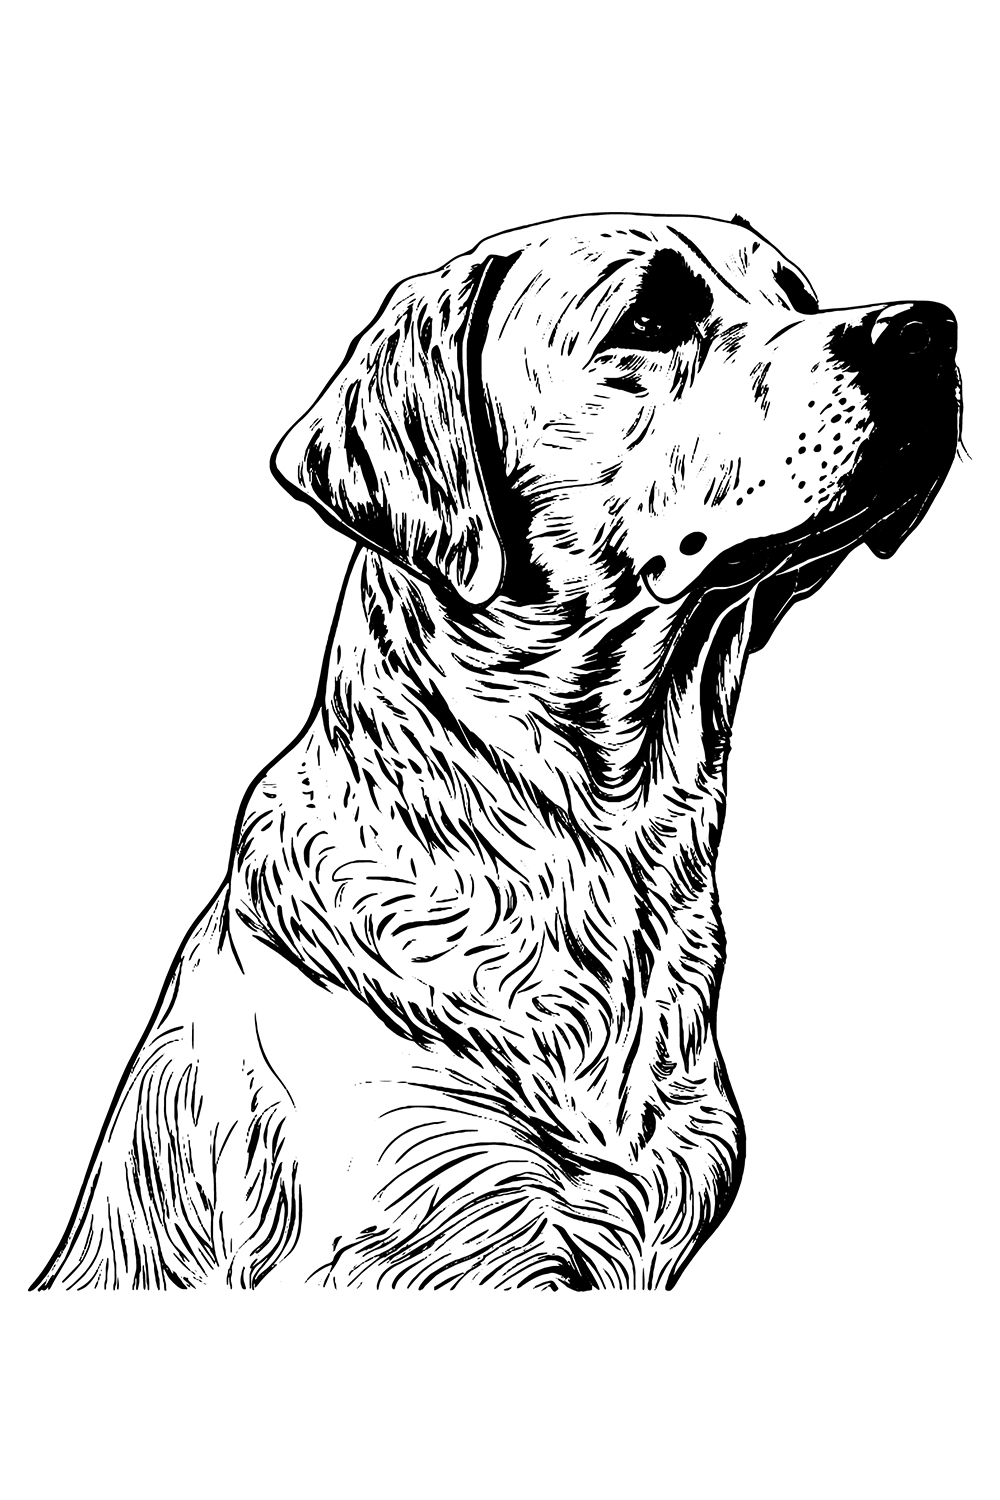 Labrador retriever dog Logo Illustration pinterest preview image.